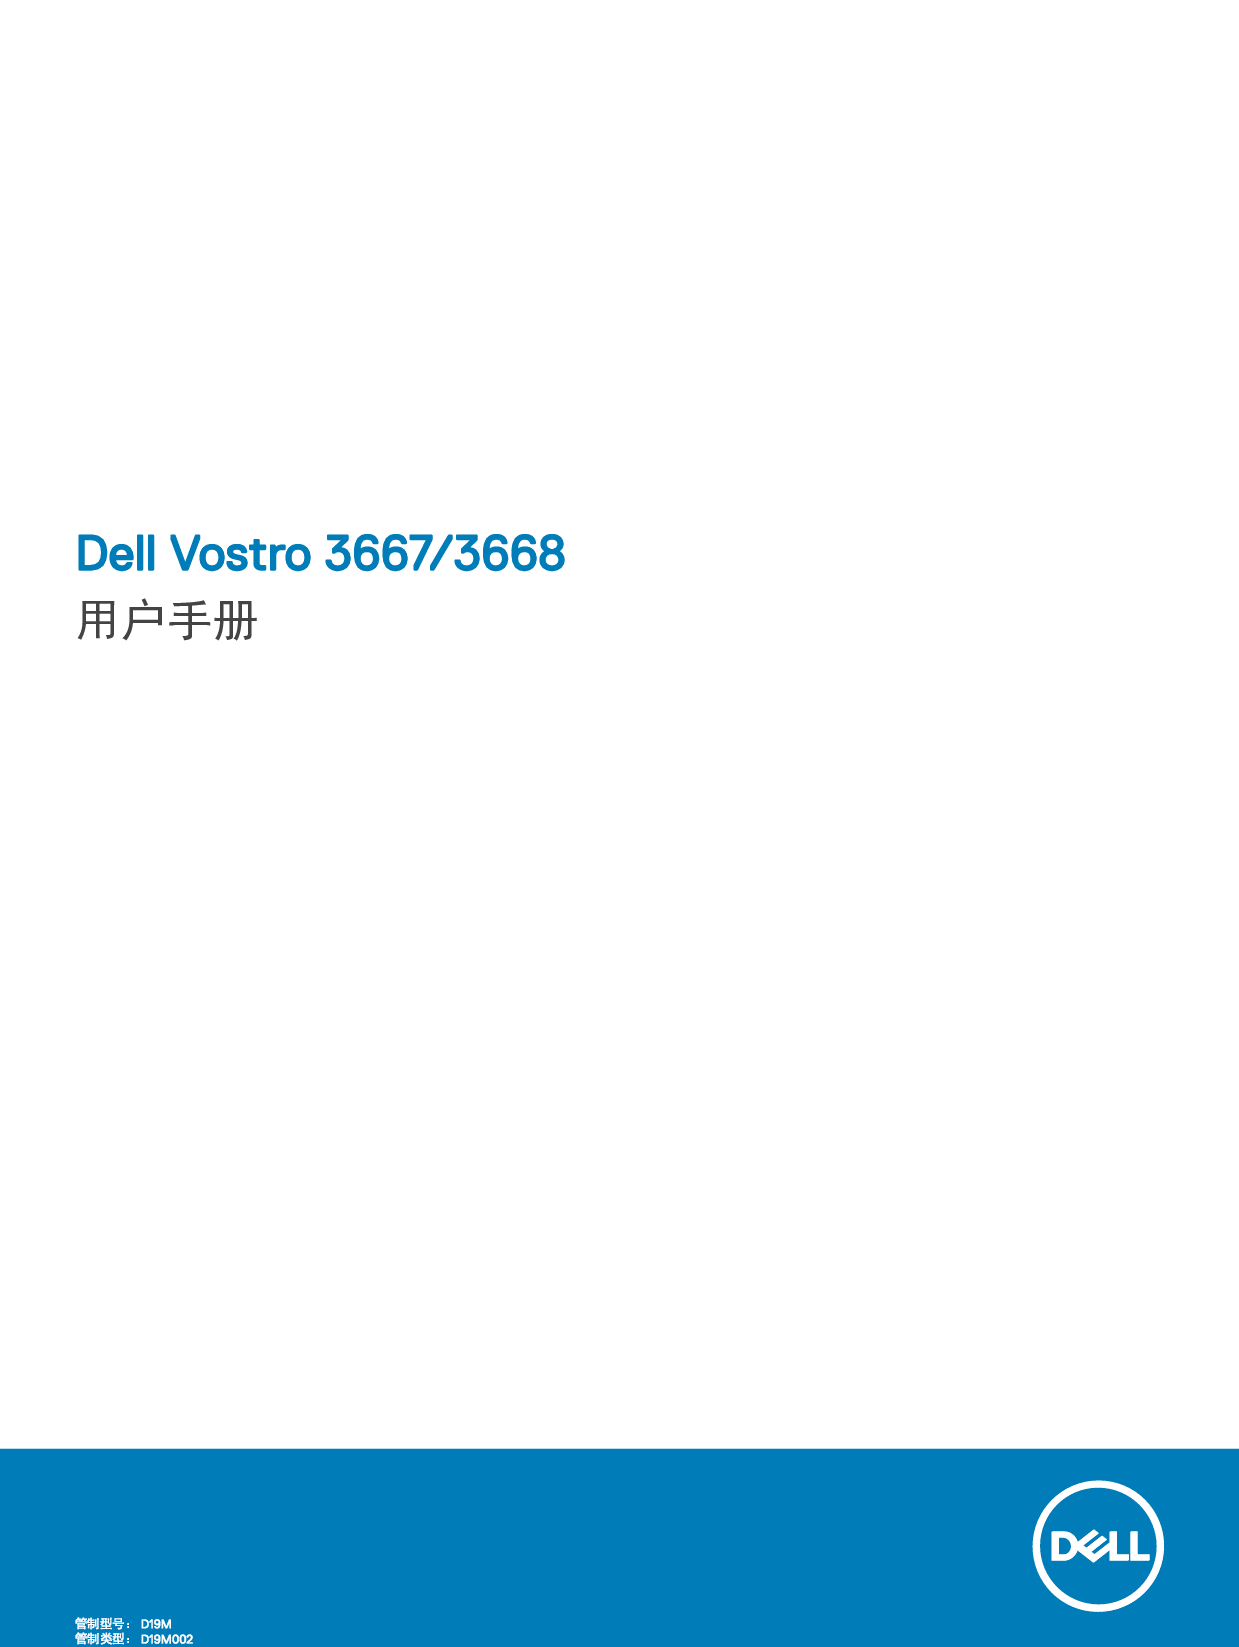 戴尔 Dell Vostro 3667 用户手册 封面